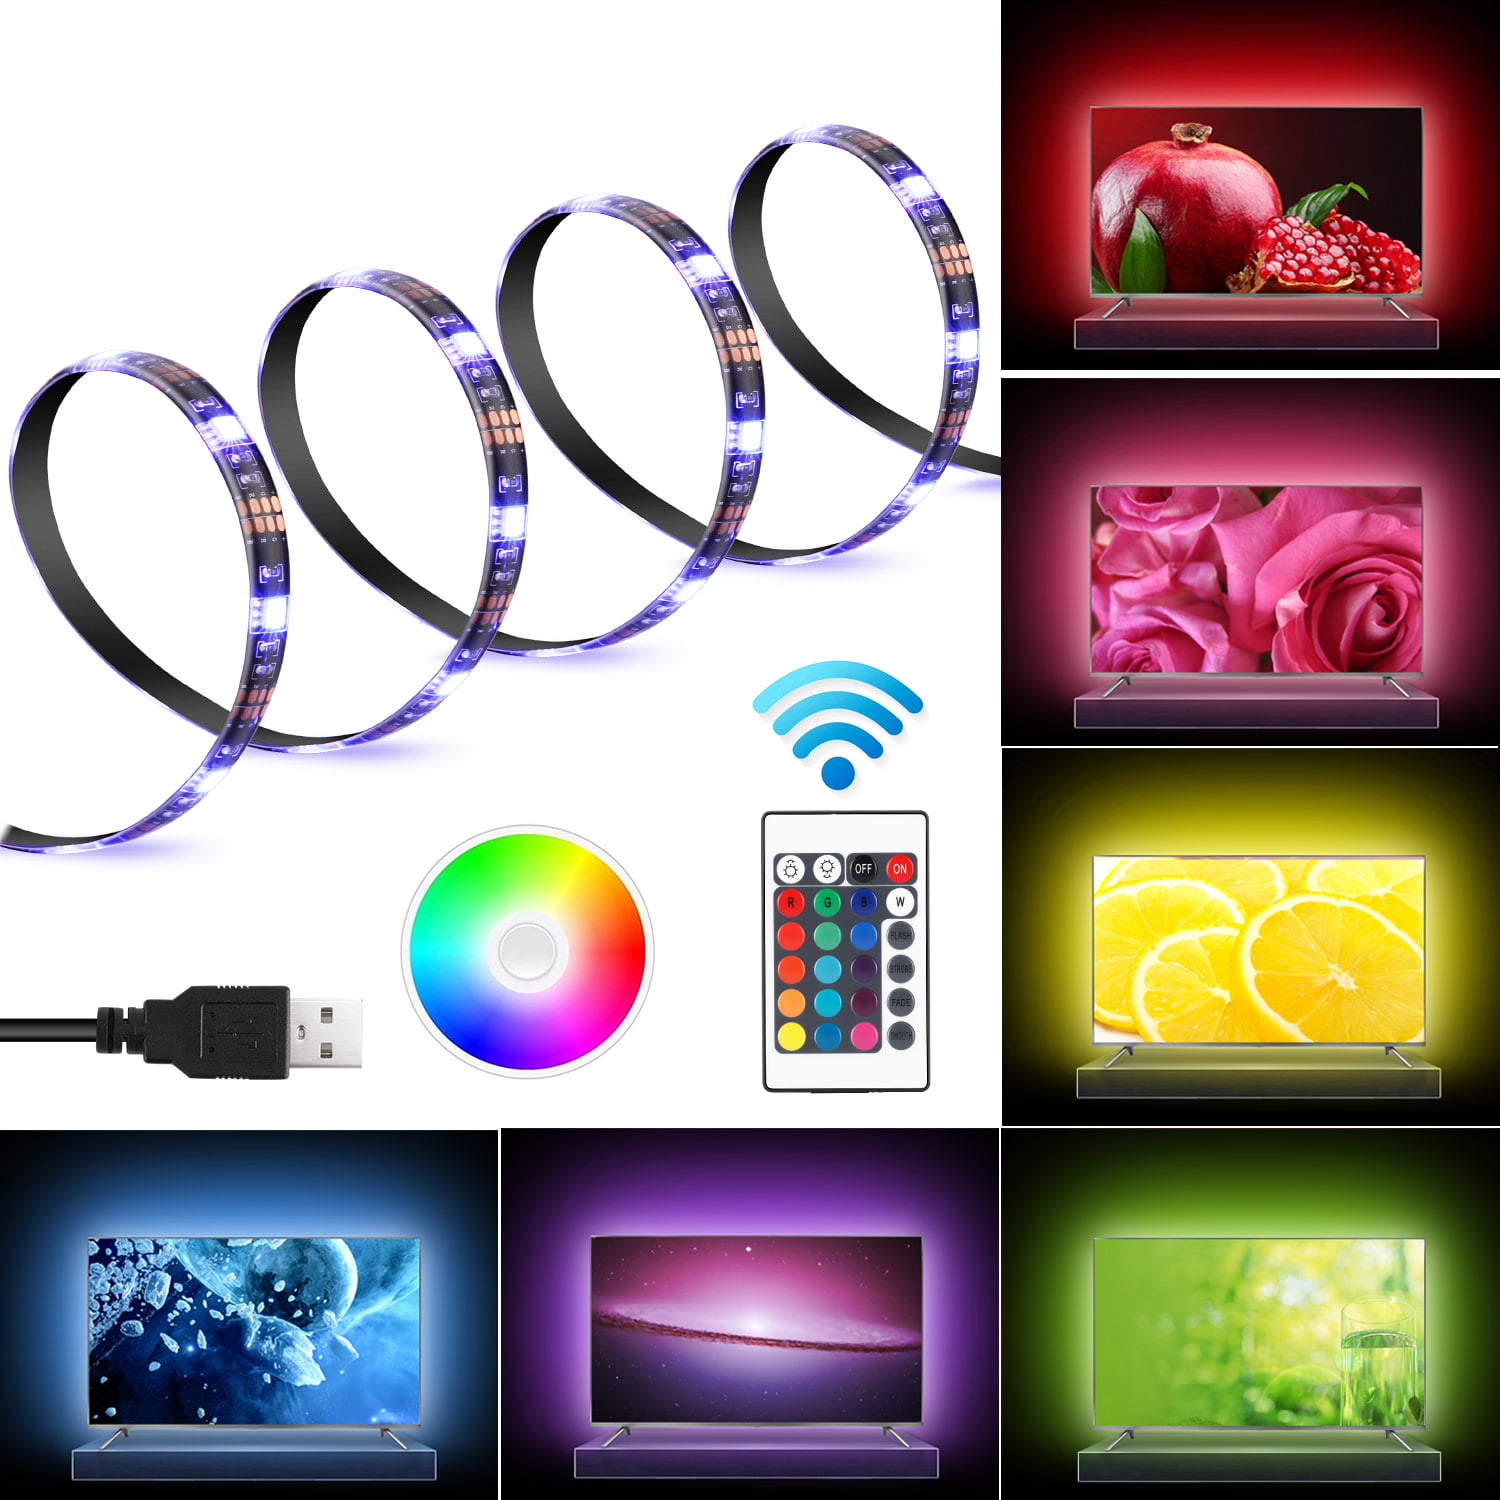 LED Accent Lighting Kit Home Theater TV Backlight Kit Strip Lights Power Adapter 